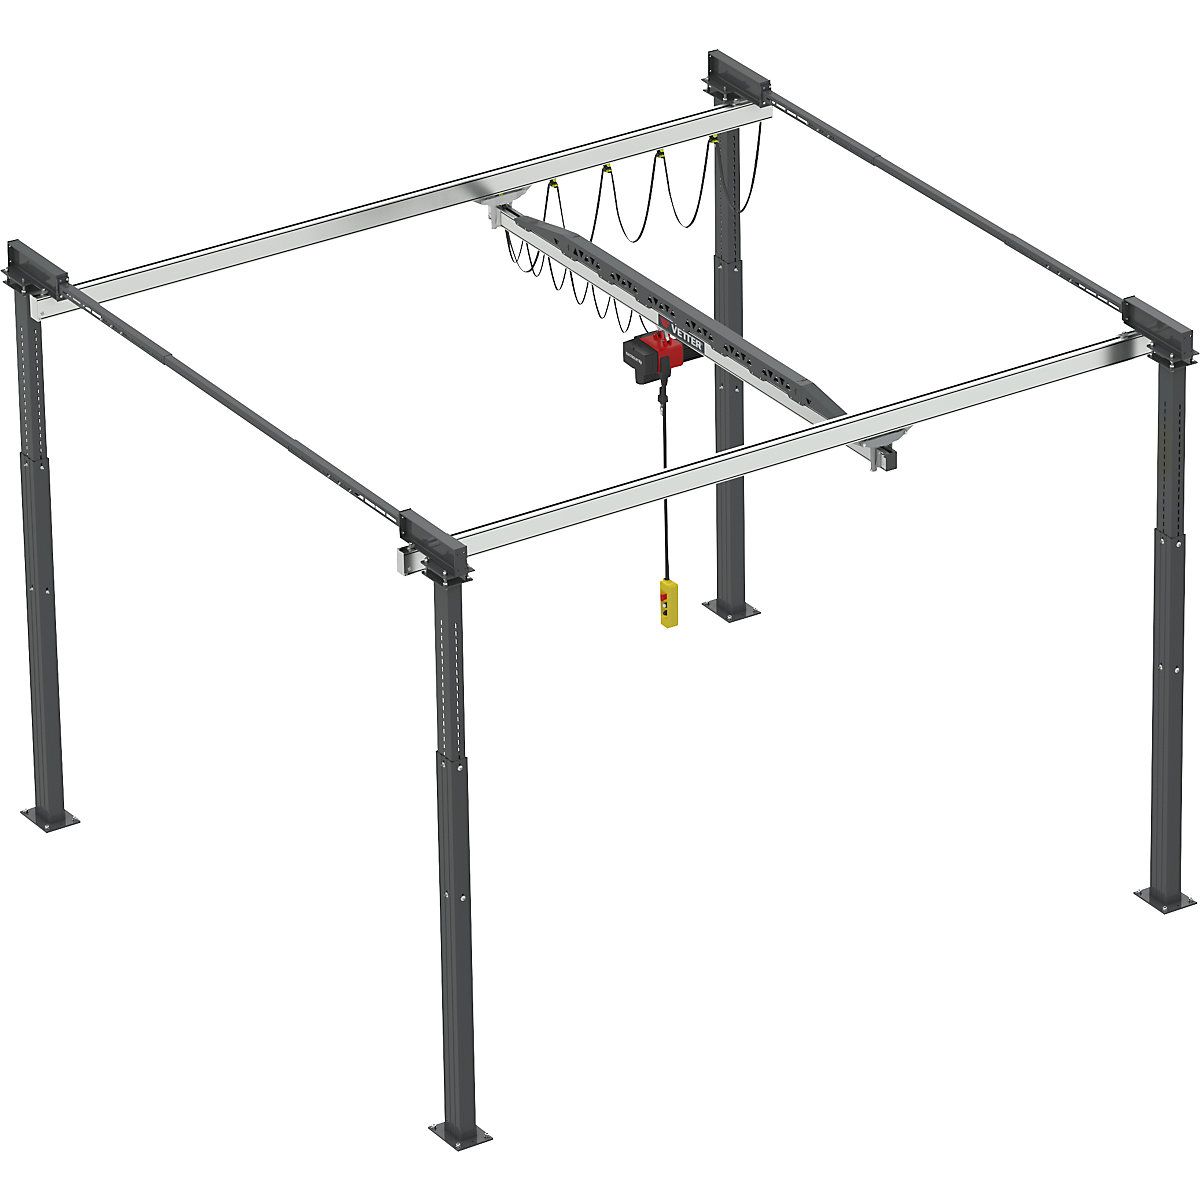 ErgoLine® gantry crane system – Vetter